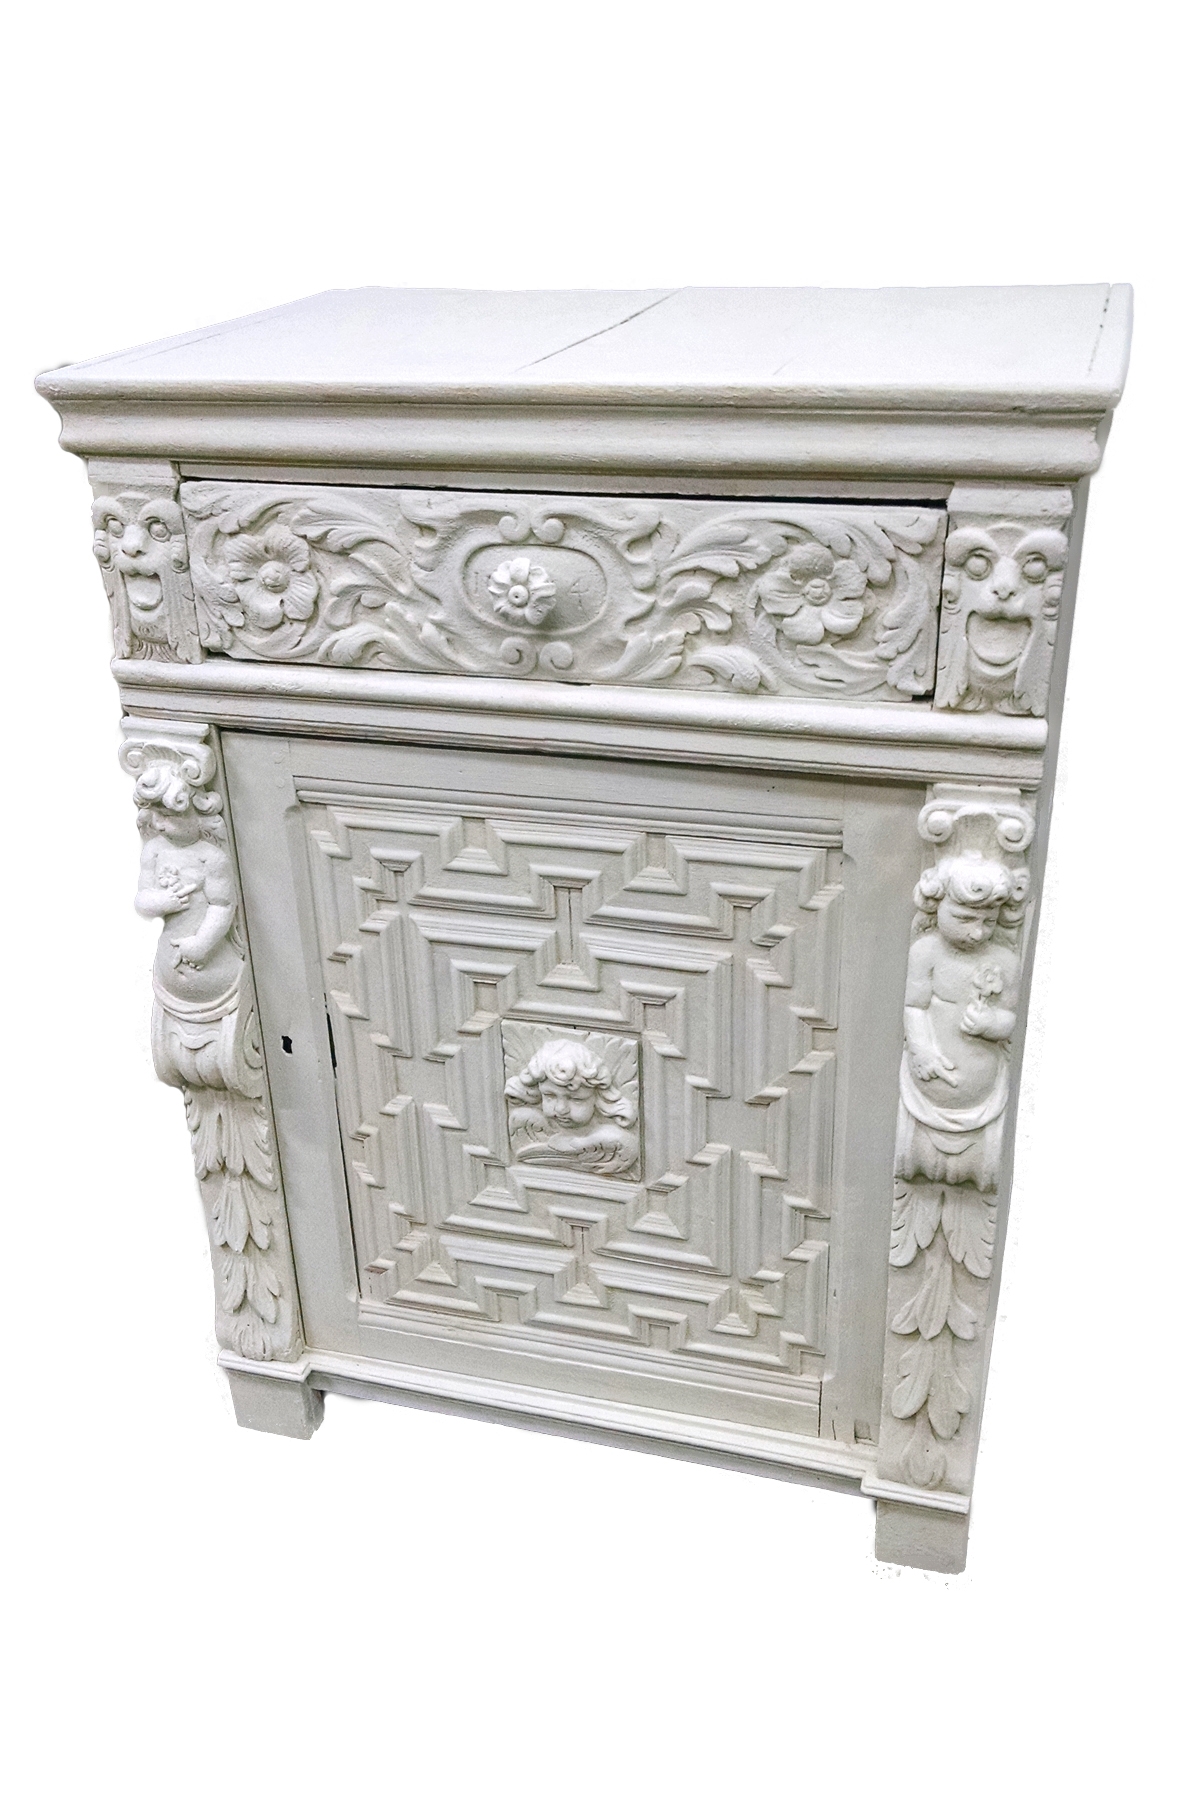 124/2046 - Cement Encrusted Renaissance Style Oak Cabinet